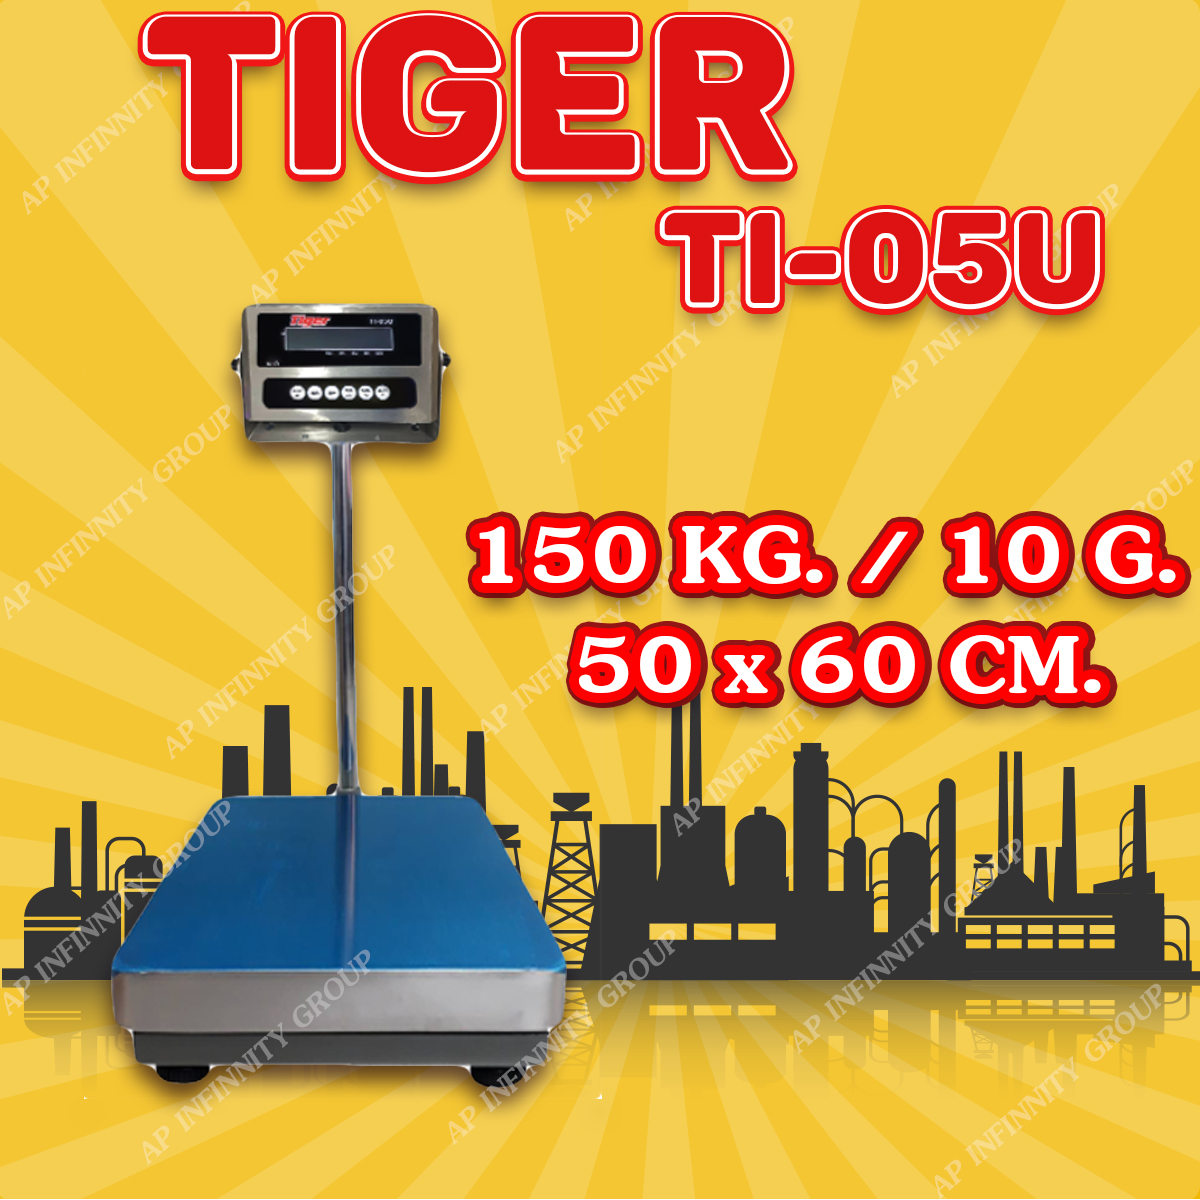 ตาชั่งดิจิตอล เครื่องชั่งดิจิตอล เครื่องชั่งตั้งพื้น 150kg ความละเอียด 10g ยี่ห้อ Tiger รุ่น TI–05U แท่นชั่งขนาดฐาน 50x 60cm มีช่อง USB สำหรับการบันทึกข้อมูลได้ รูปที่ 1